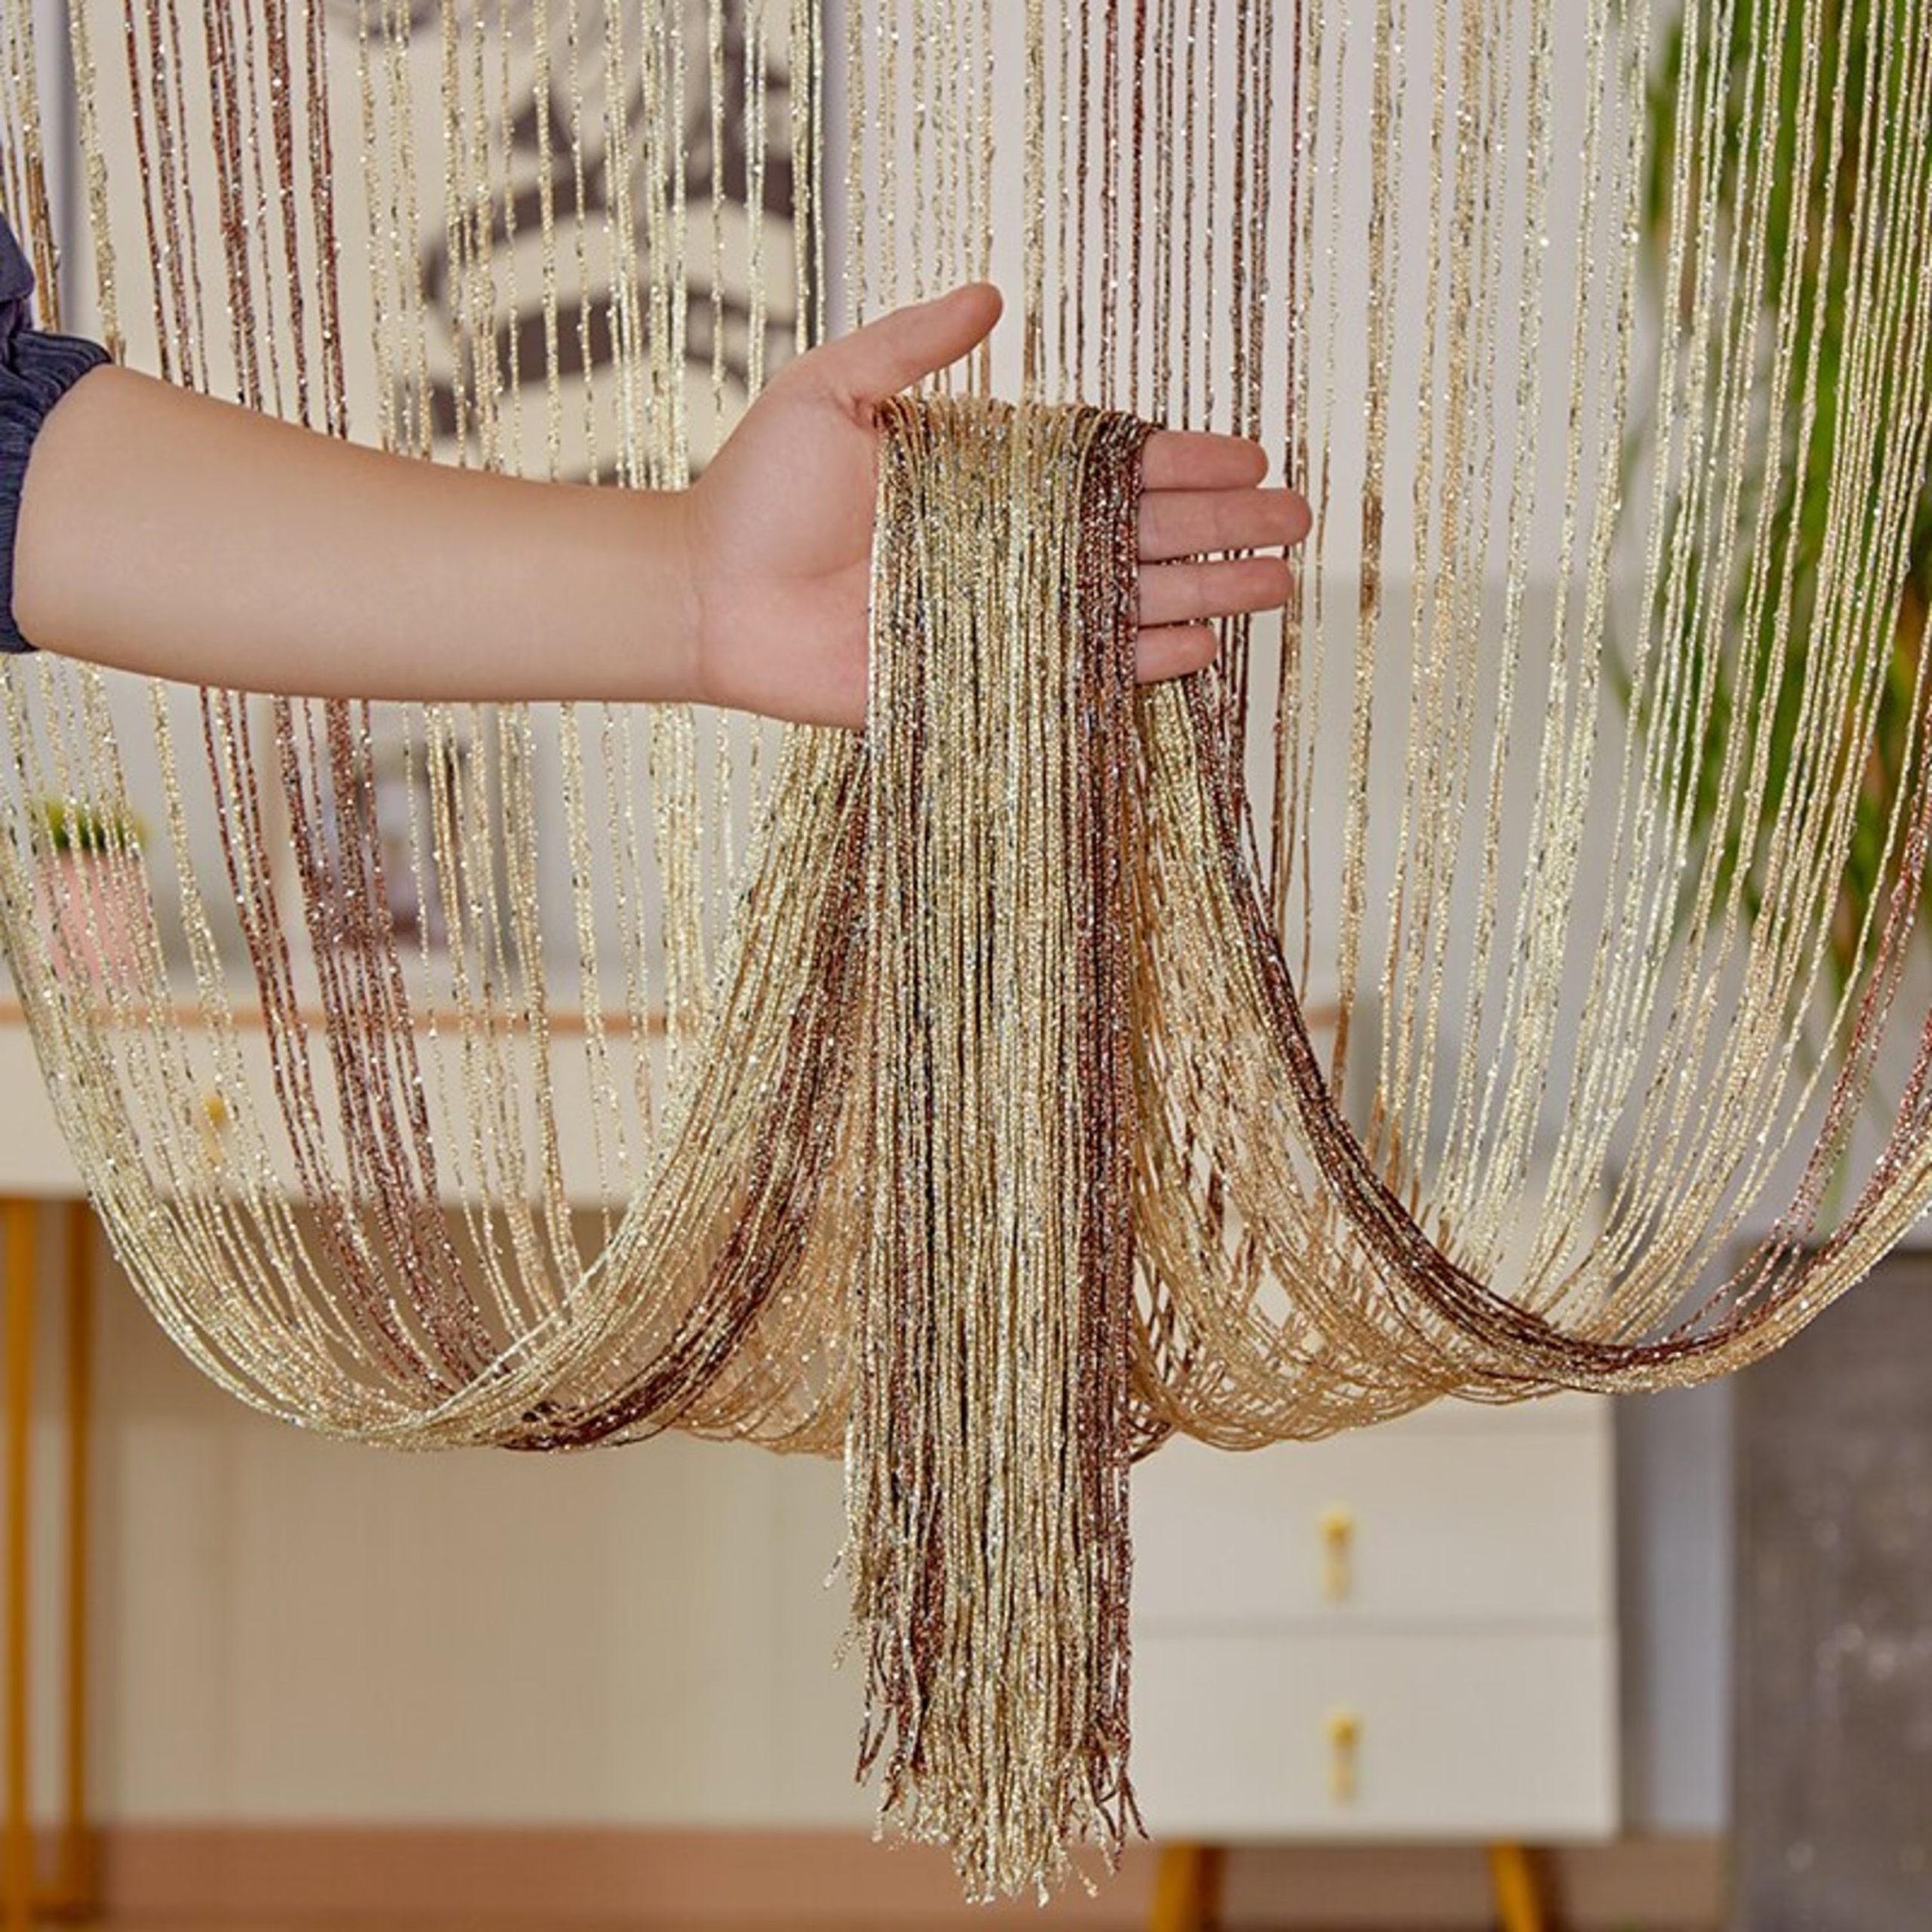 Rèm sợi chỉ được dùng nhiều trong các cơ sở làm đẹp